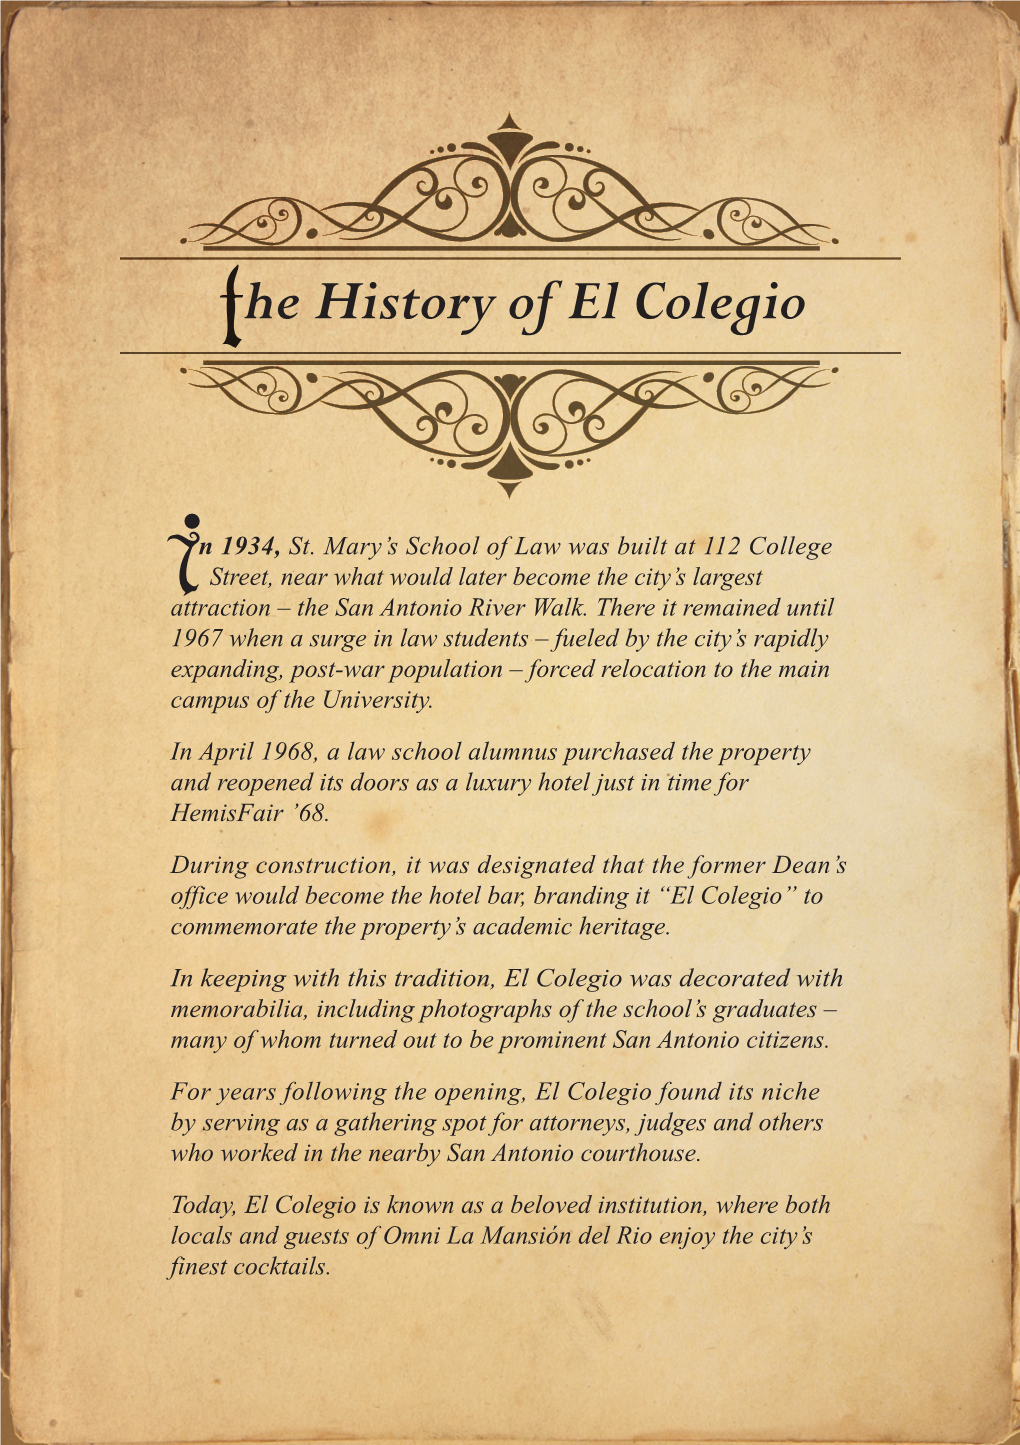 He History of El Colegio